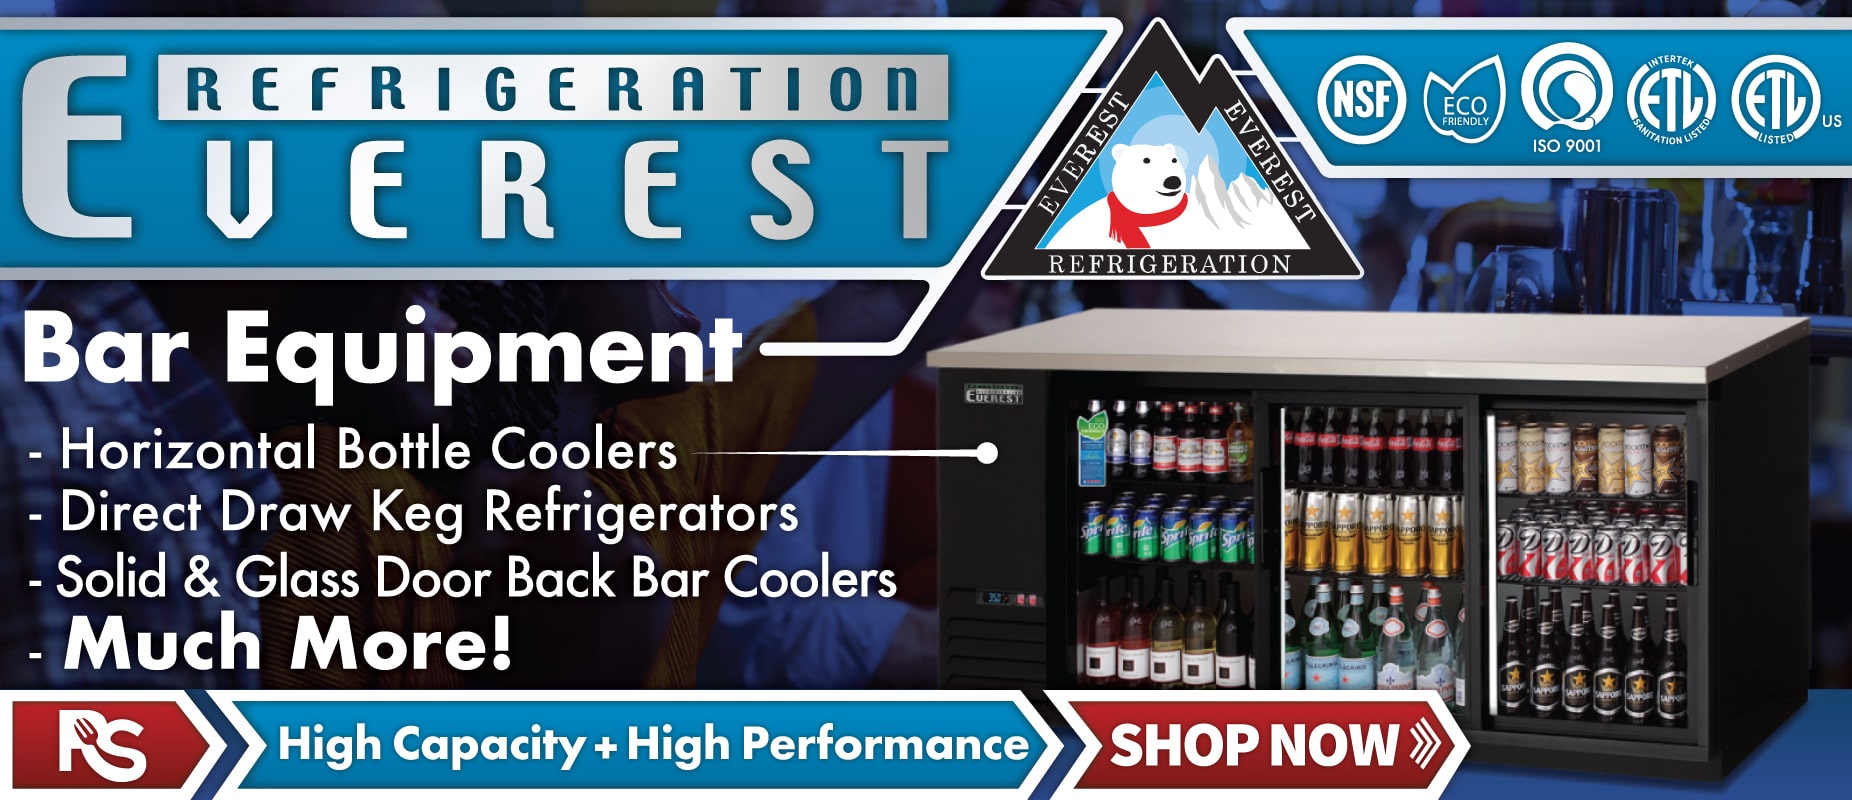 Everest Bar Refrigeration | Restaurant Supply